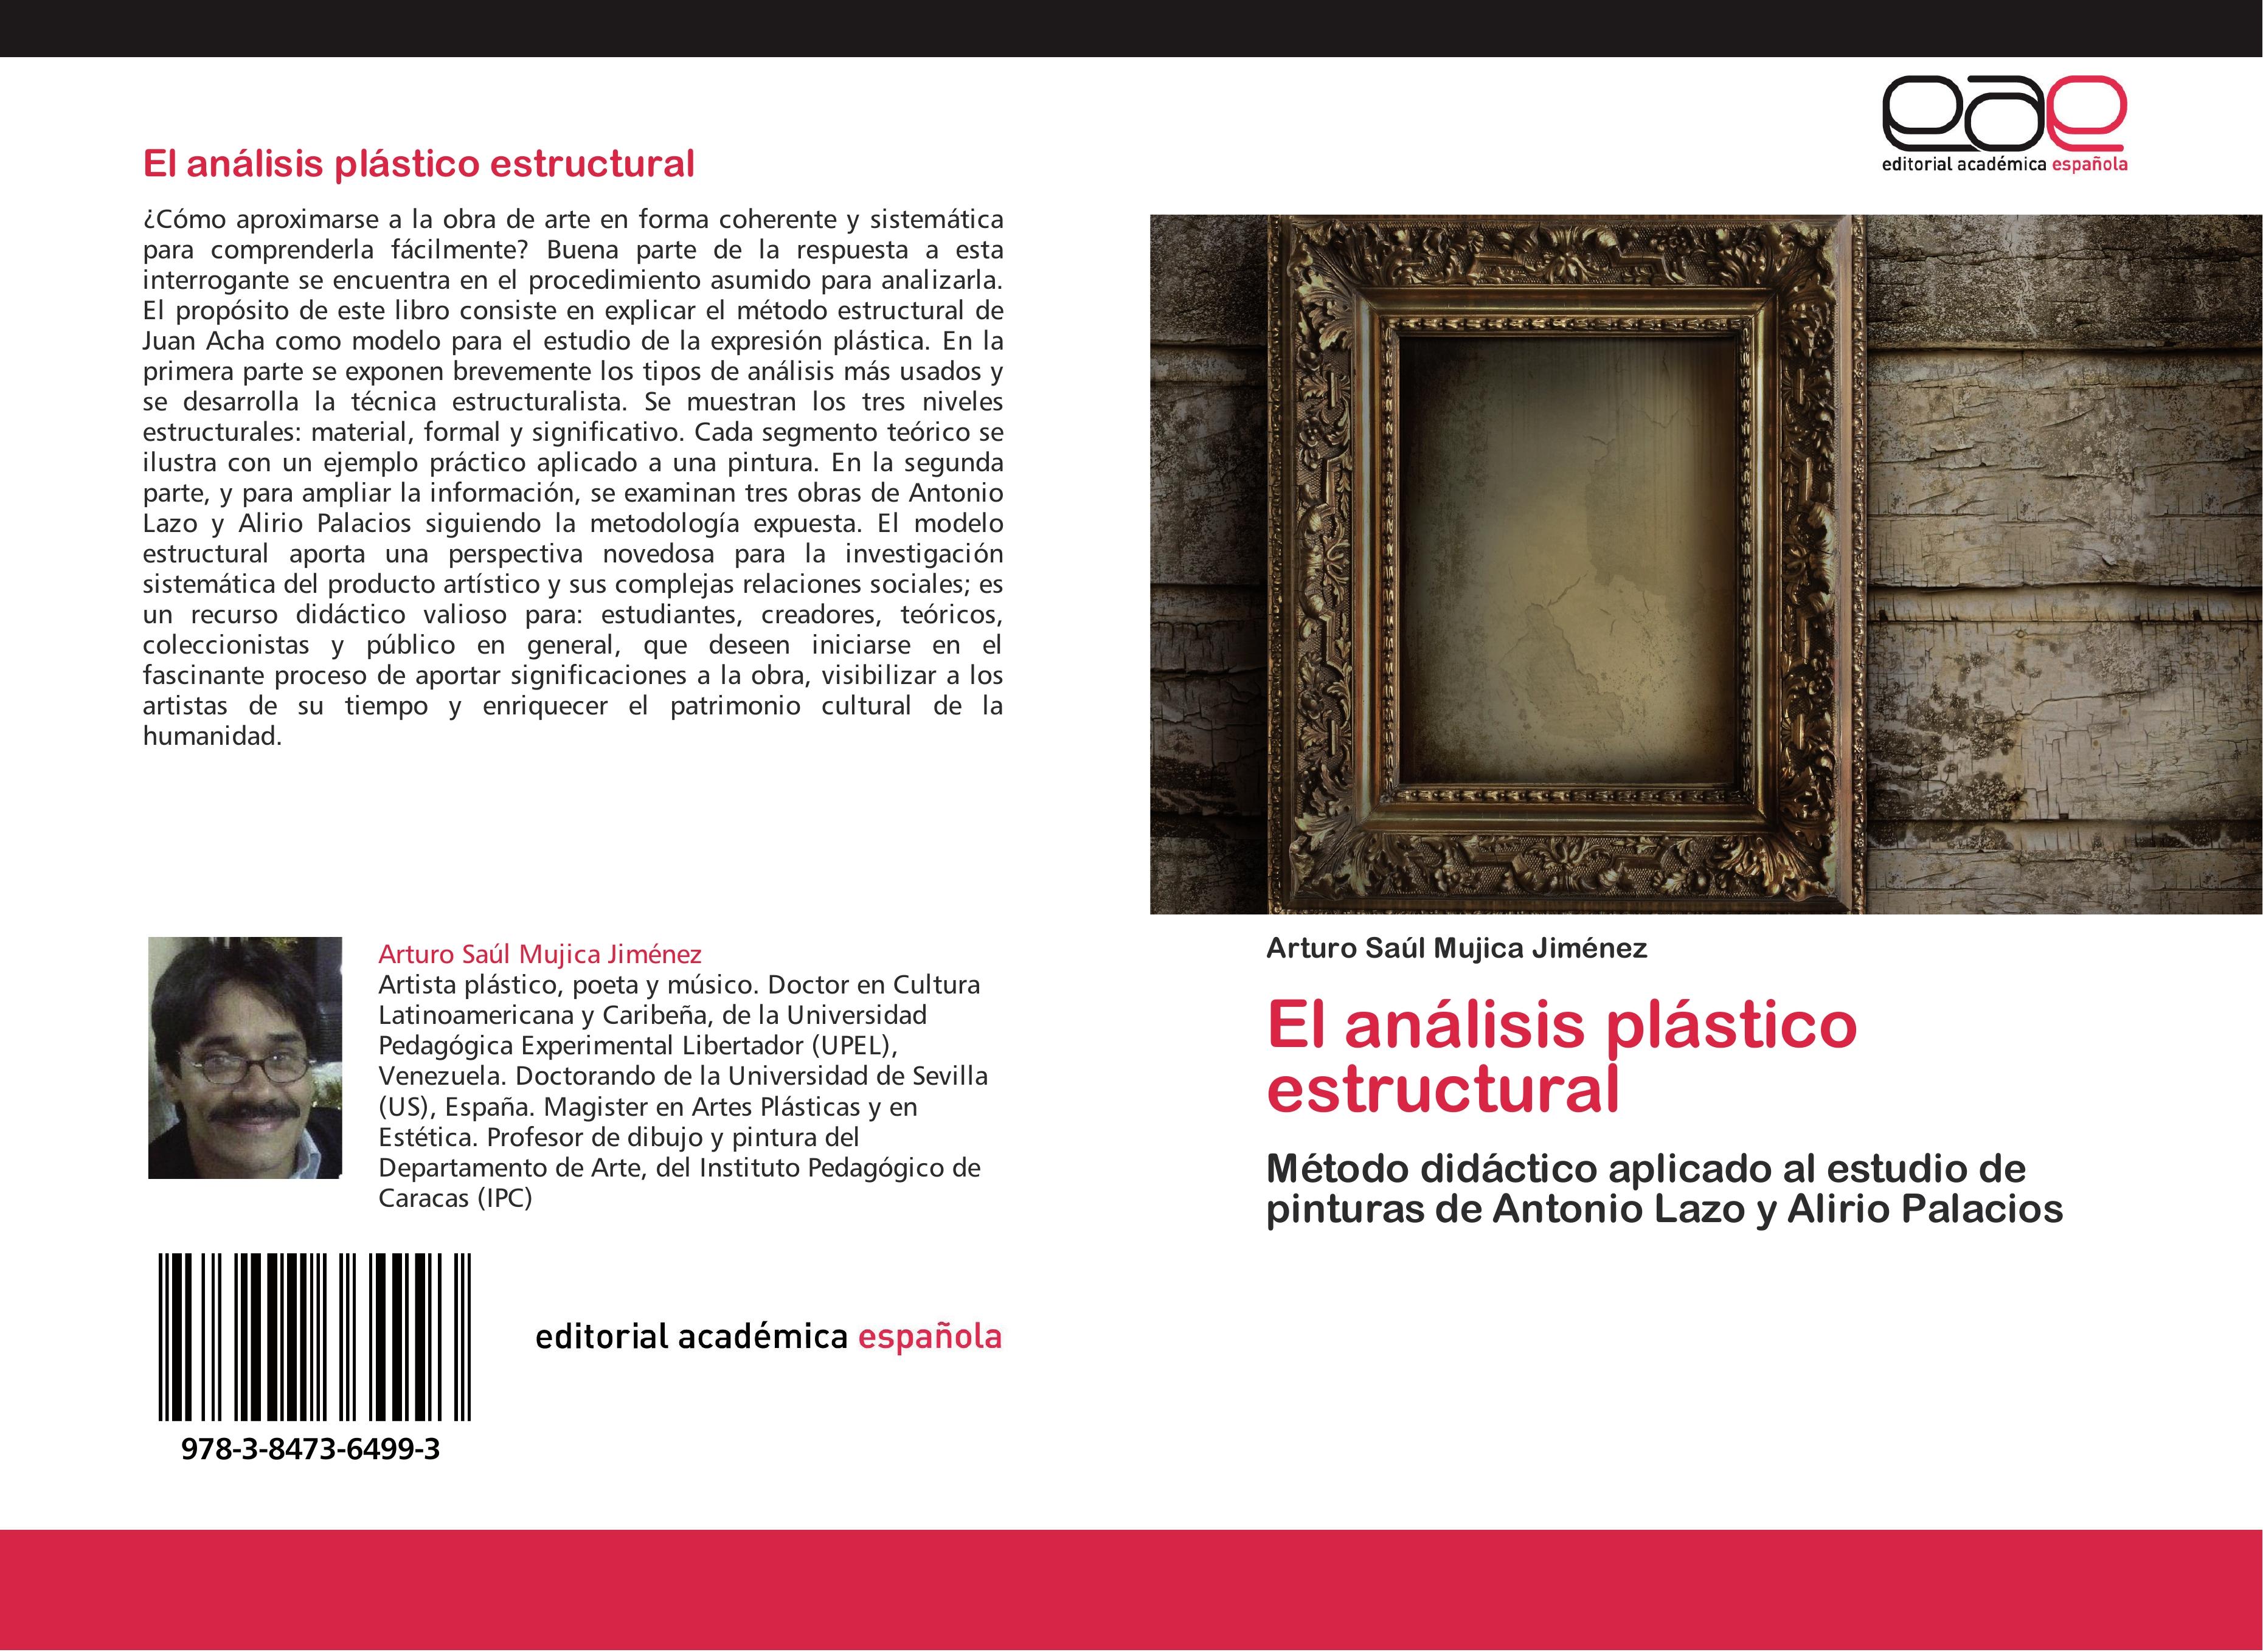 El análisis plástico estructural - Arturo Saúl Mujica Jiménez